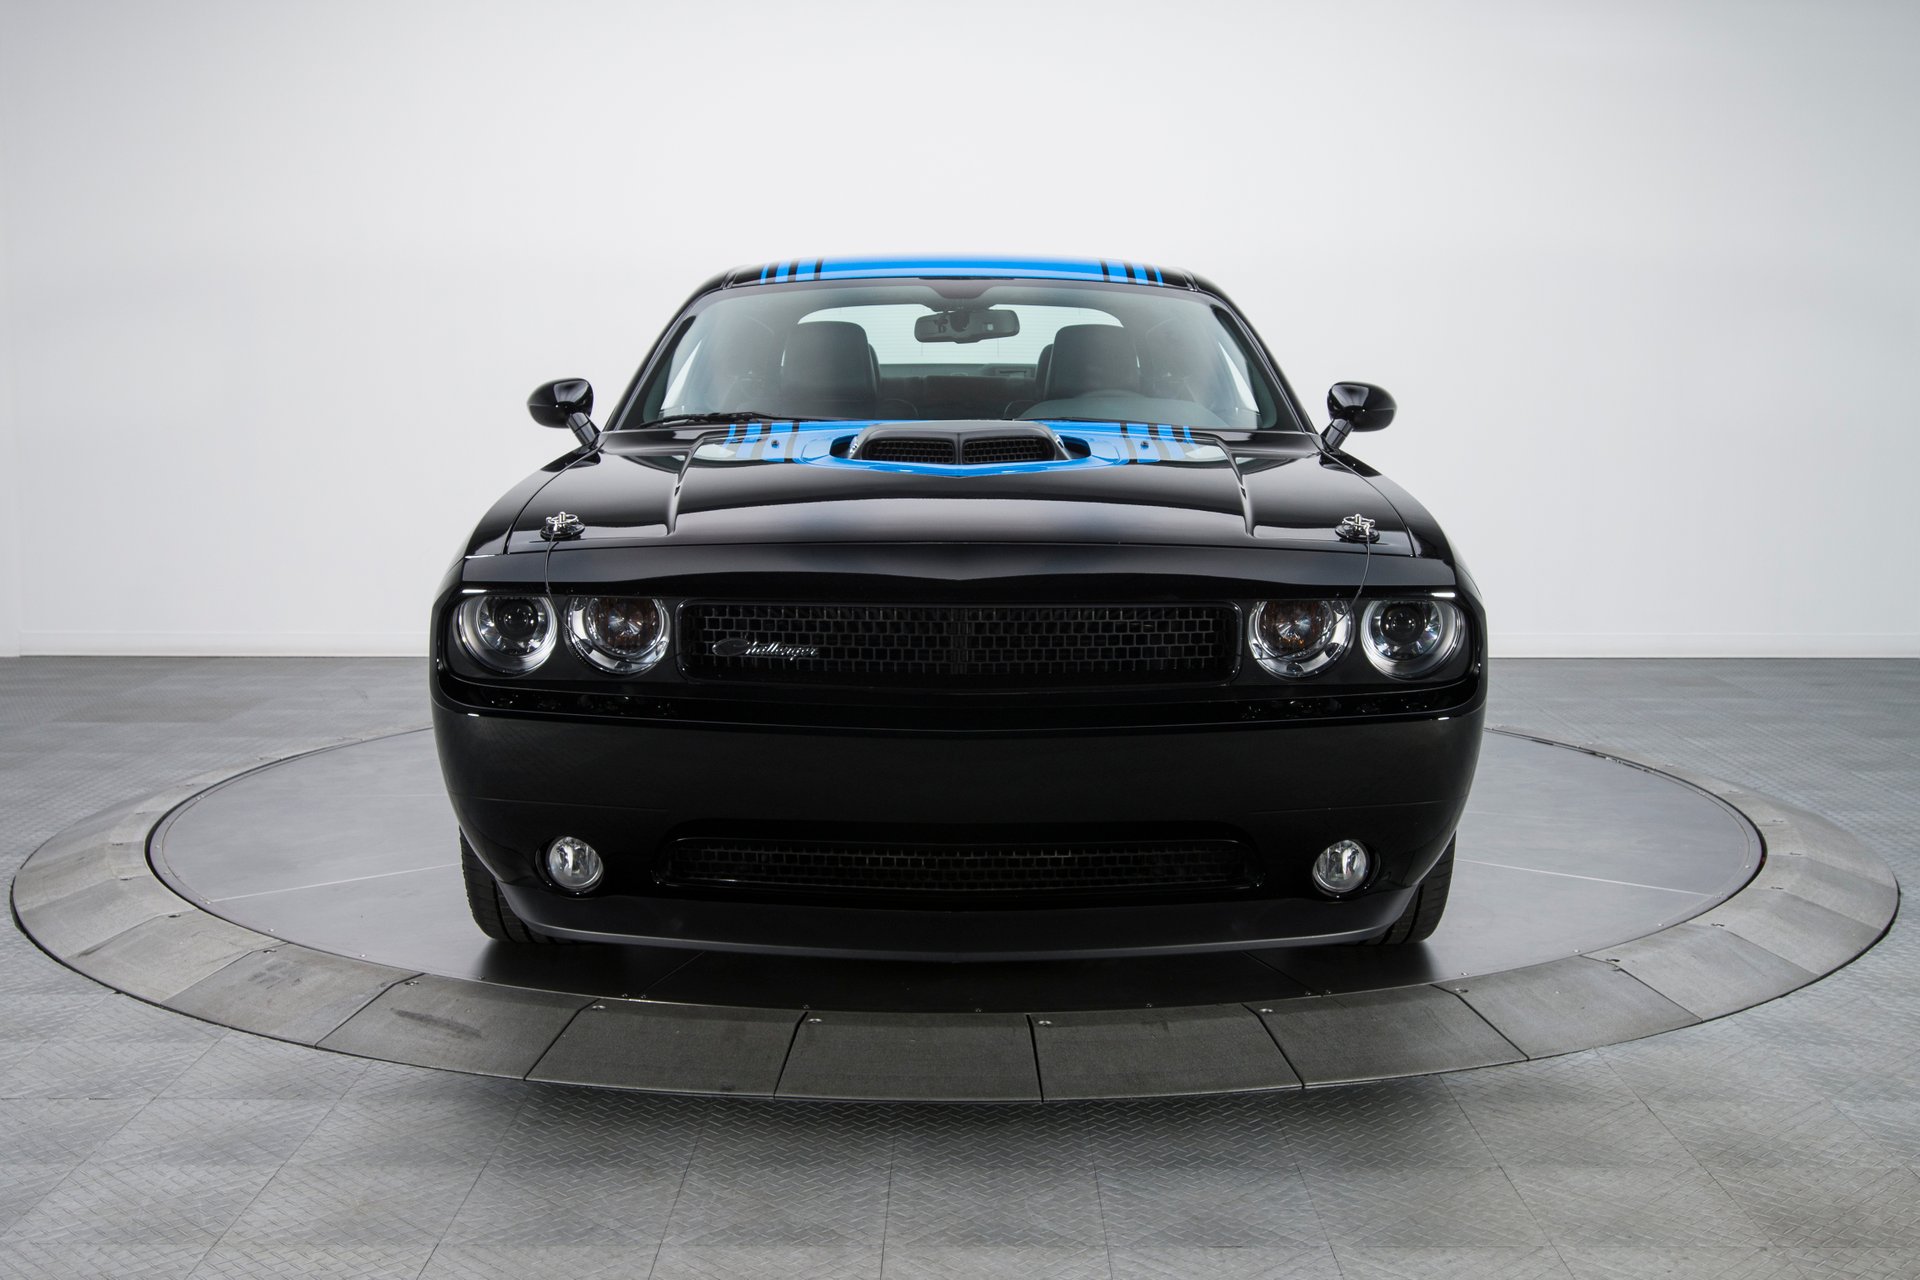 For Sale 2014 Dodge Challenger